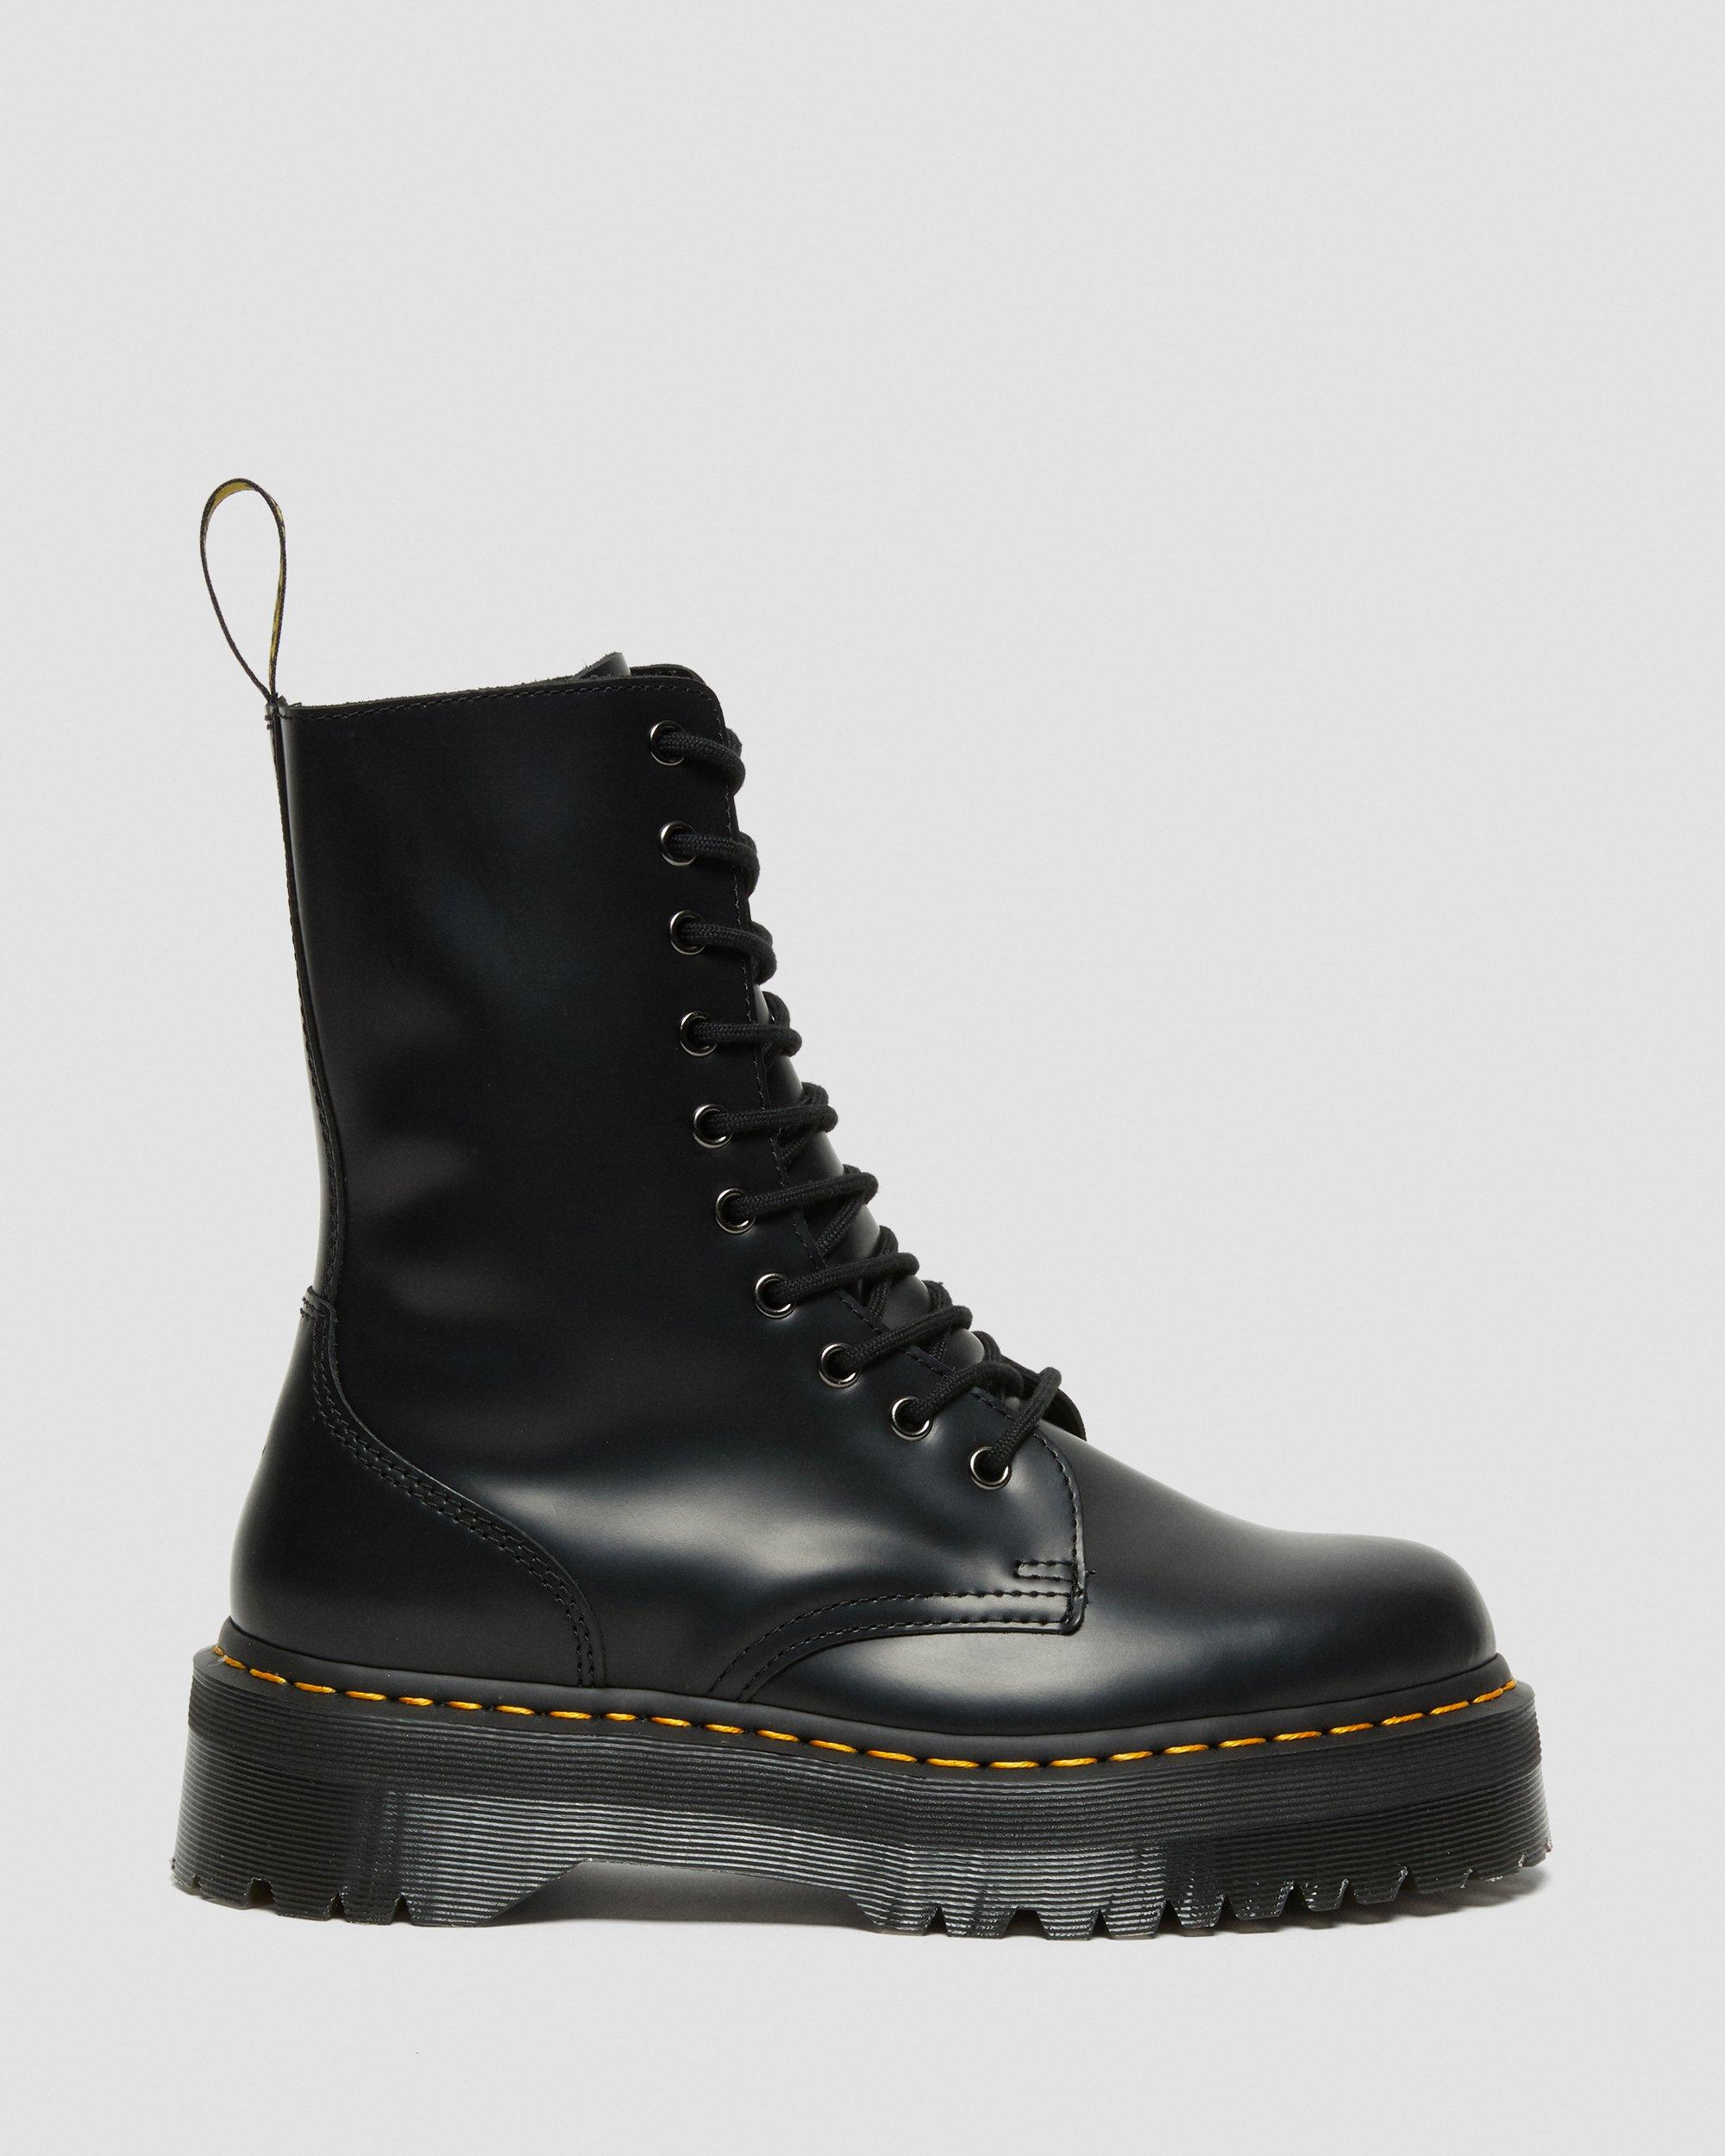 Jadon Hi Boot Smooth Leather Platforms, Black | Dr. Martens